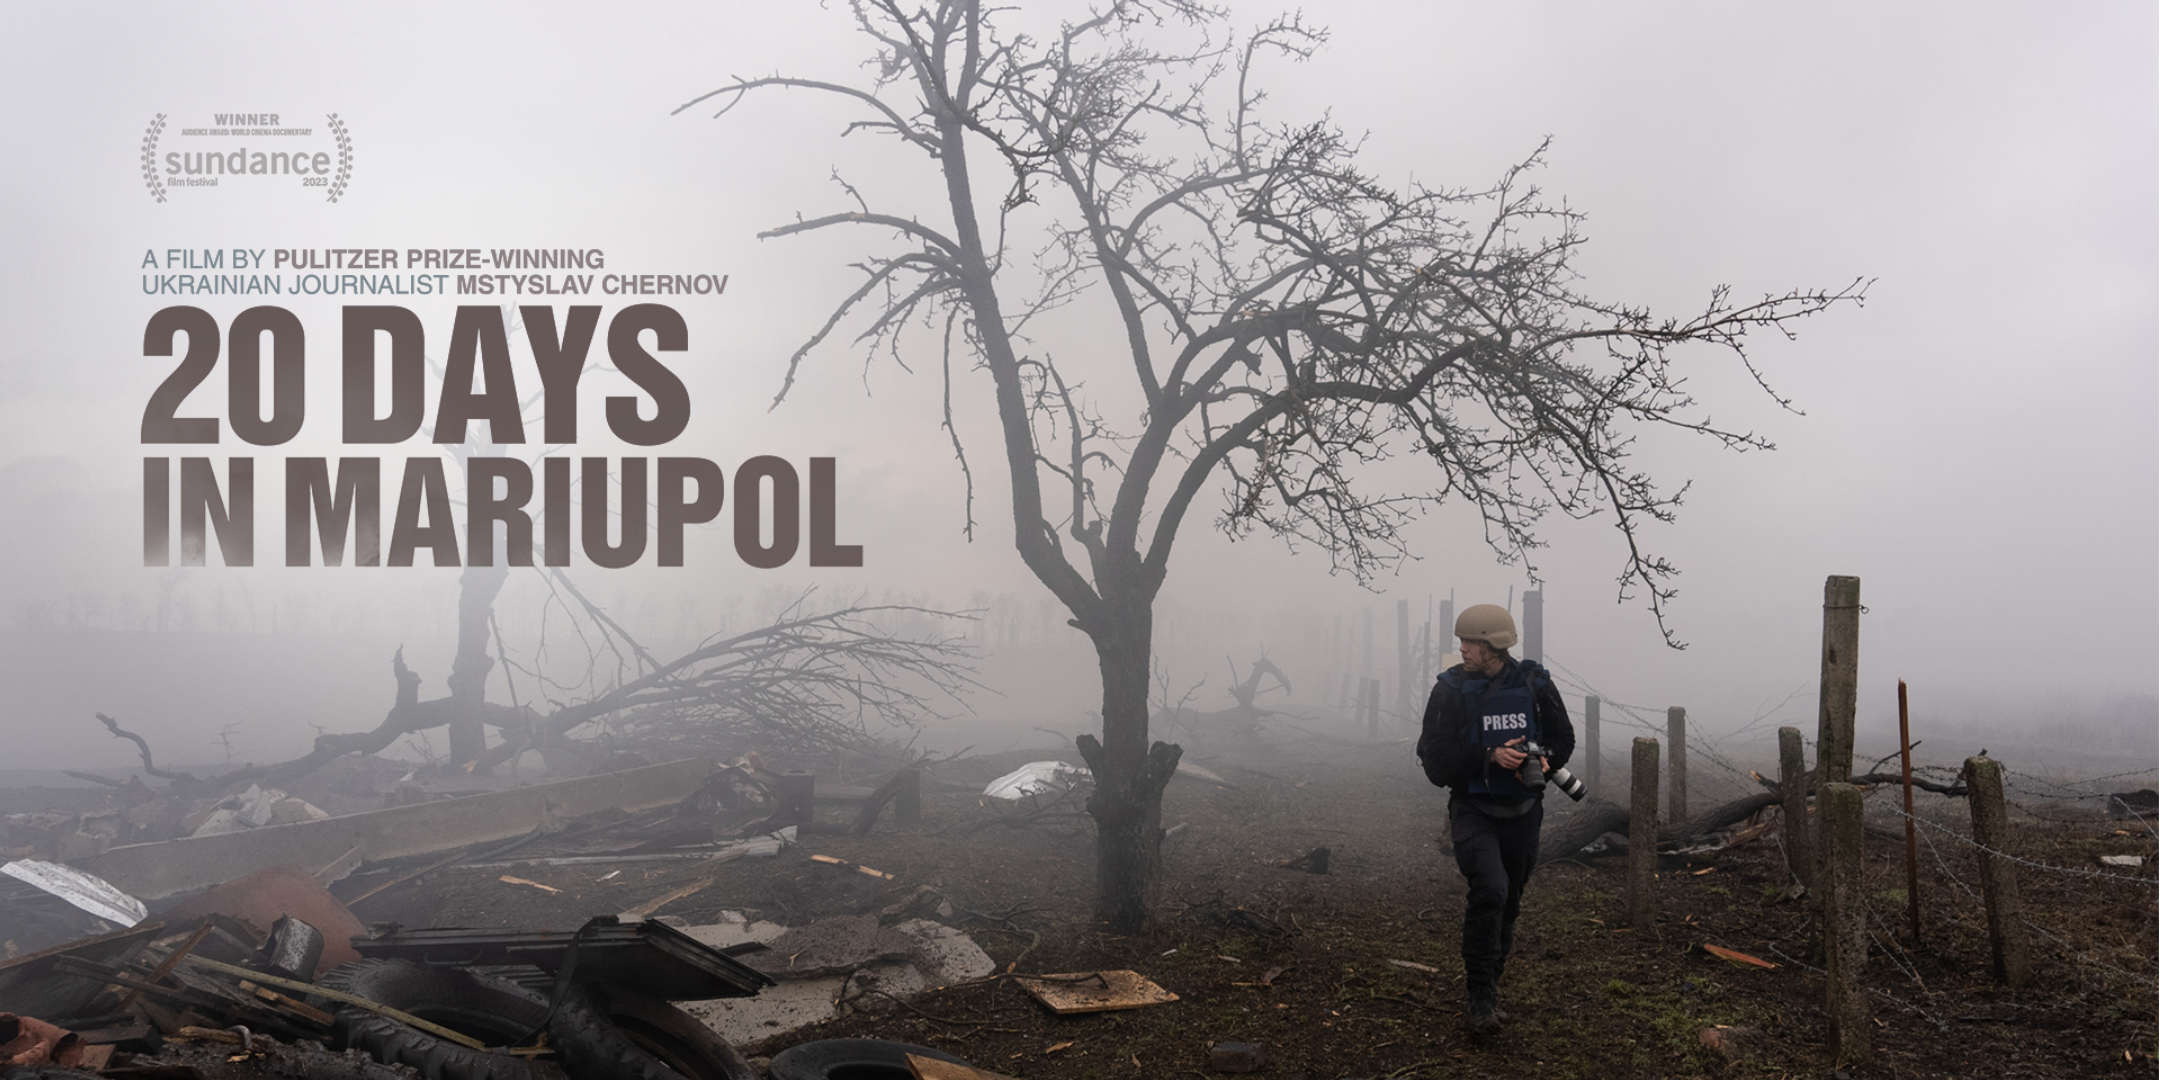 “20 Days in Mariupol” – Dokumentarfilm über den Krieg gegen die Ukraine